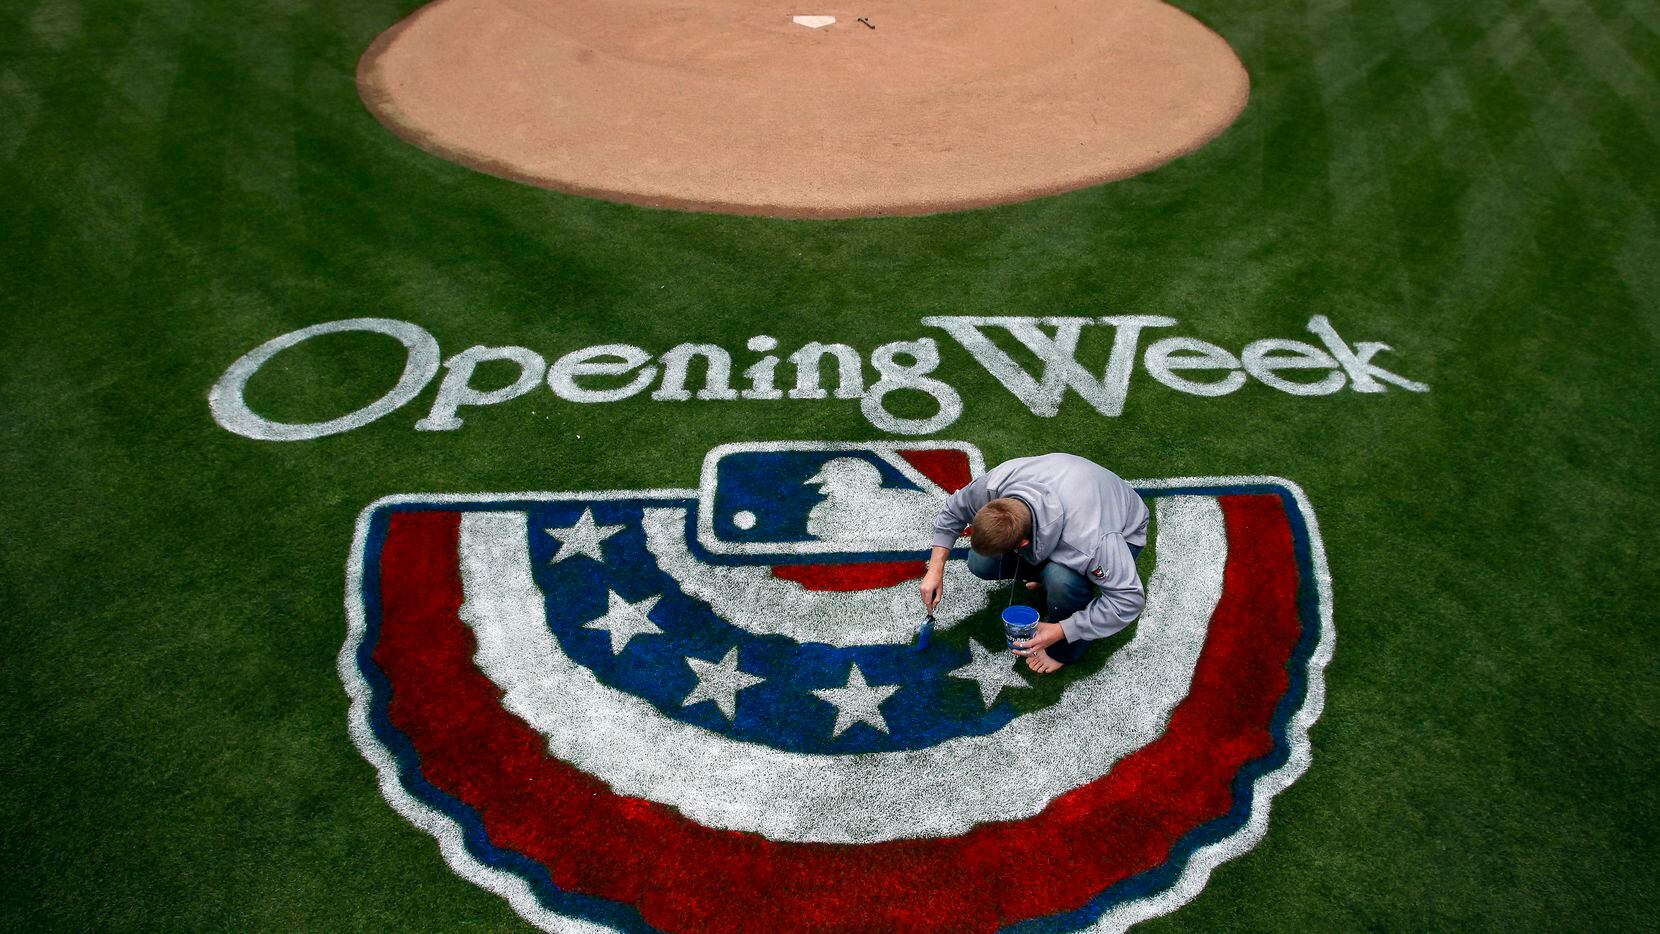 La temporada de beisbol de Grandes Ligas abre el jueves 22 de julio, cuatro meses más tarde de lo programado debido a la pandemia del coronavirus.